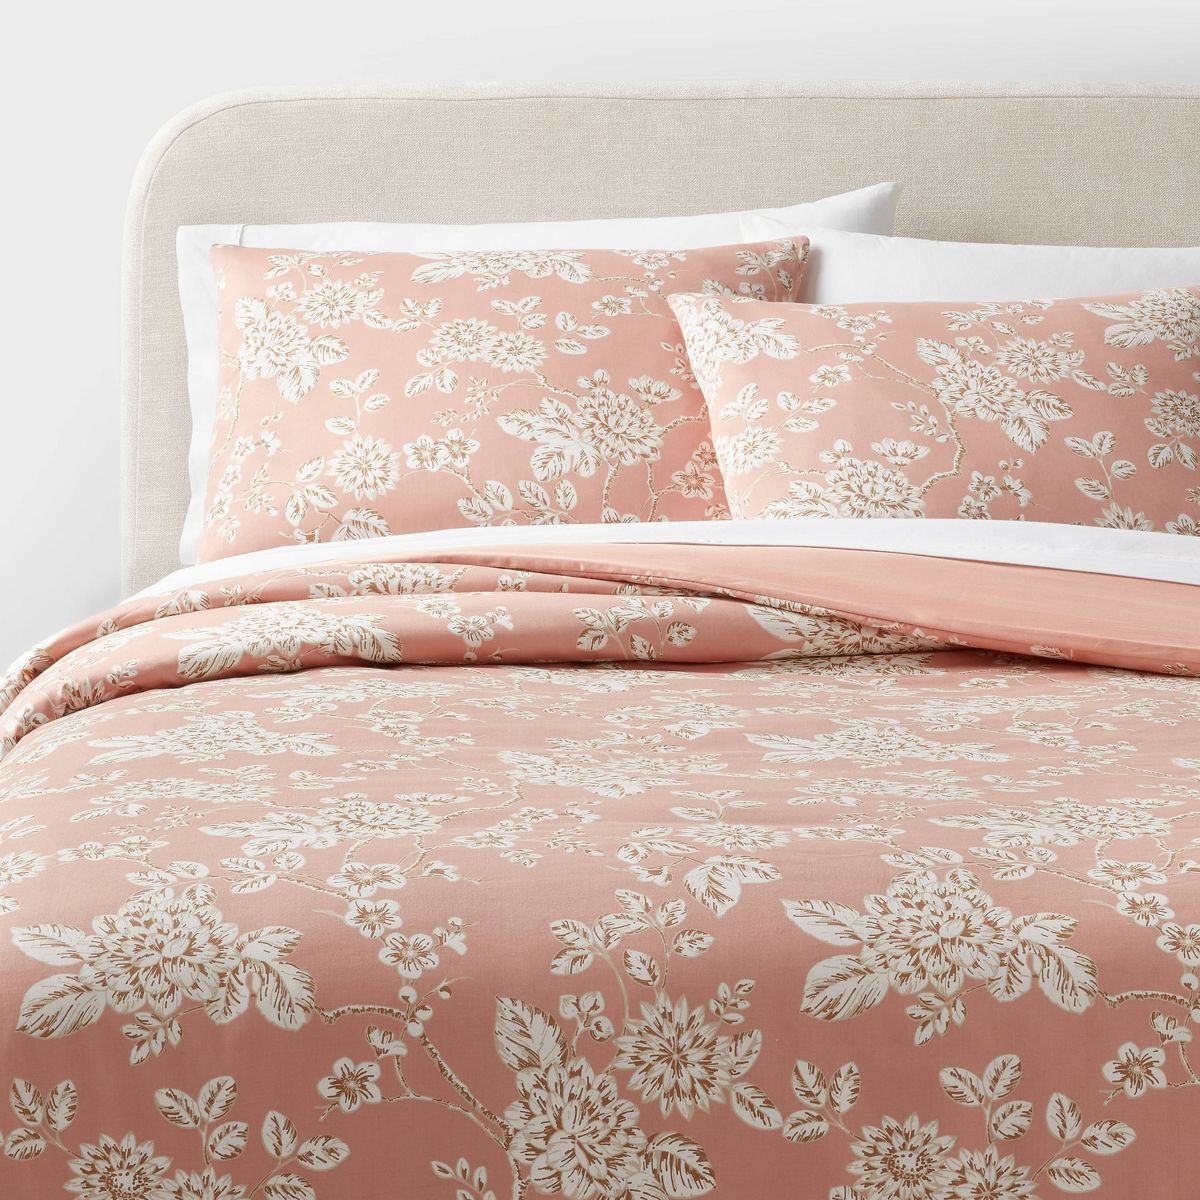 Trad Floral Print Duvet and Sham Set Light Pink - Threshold™ | Target